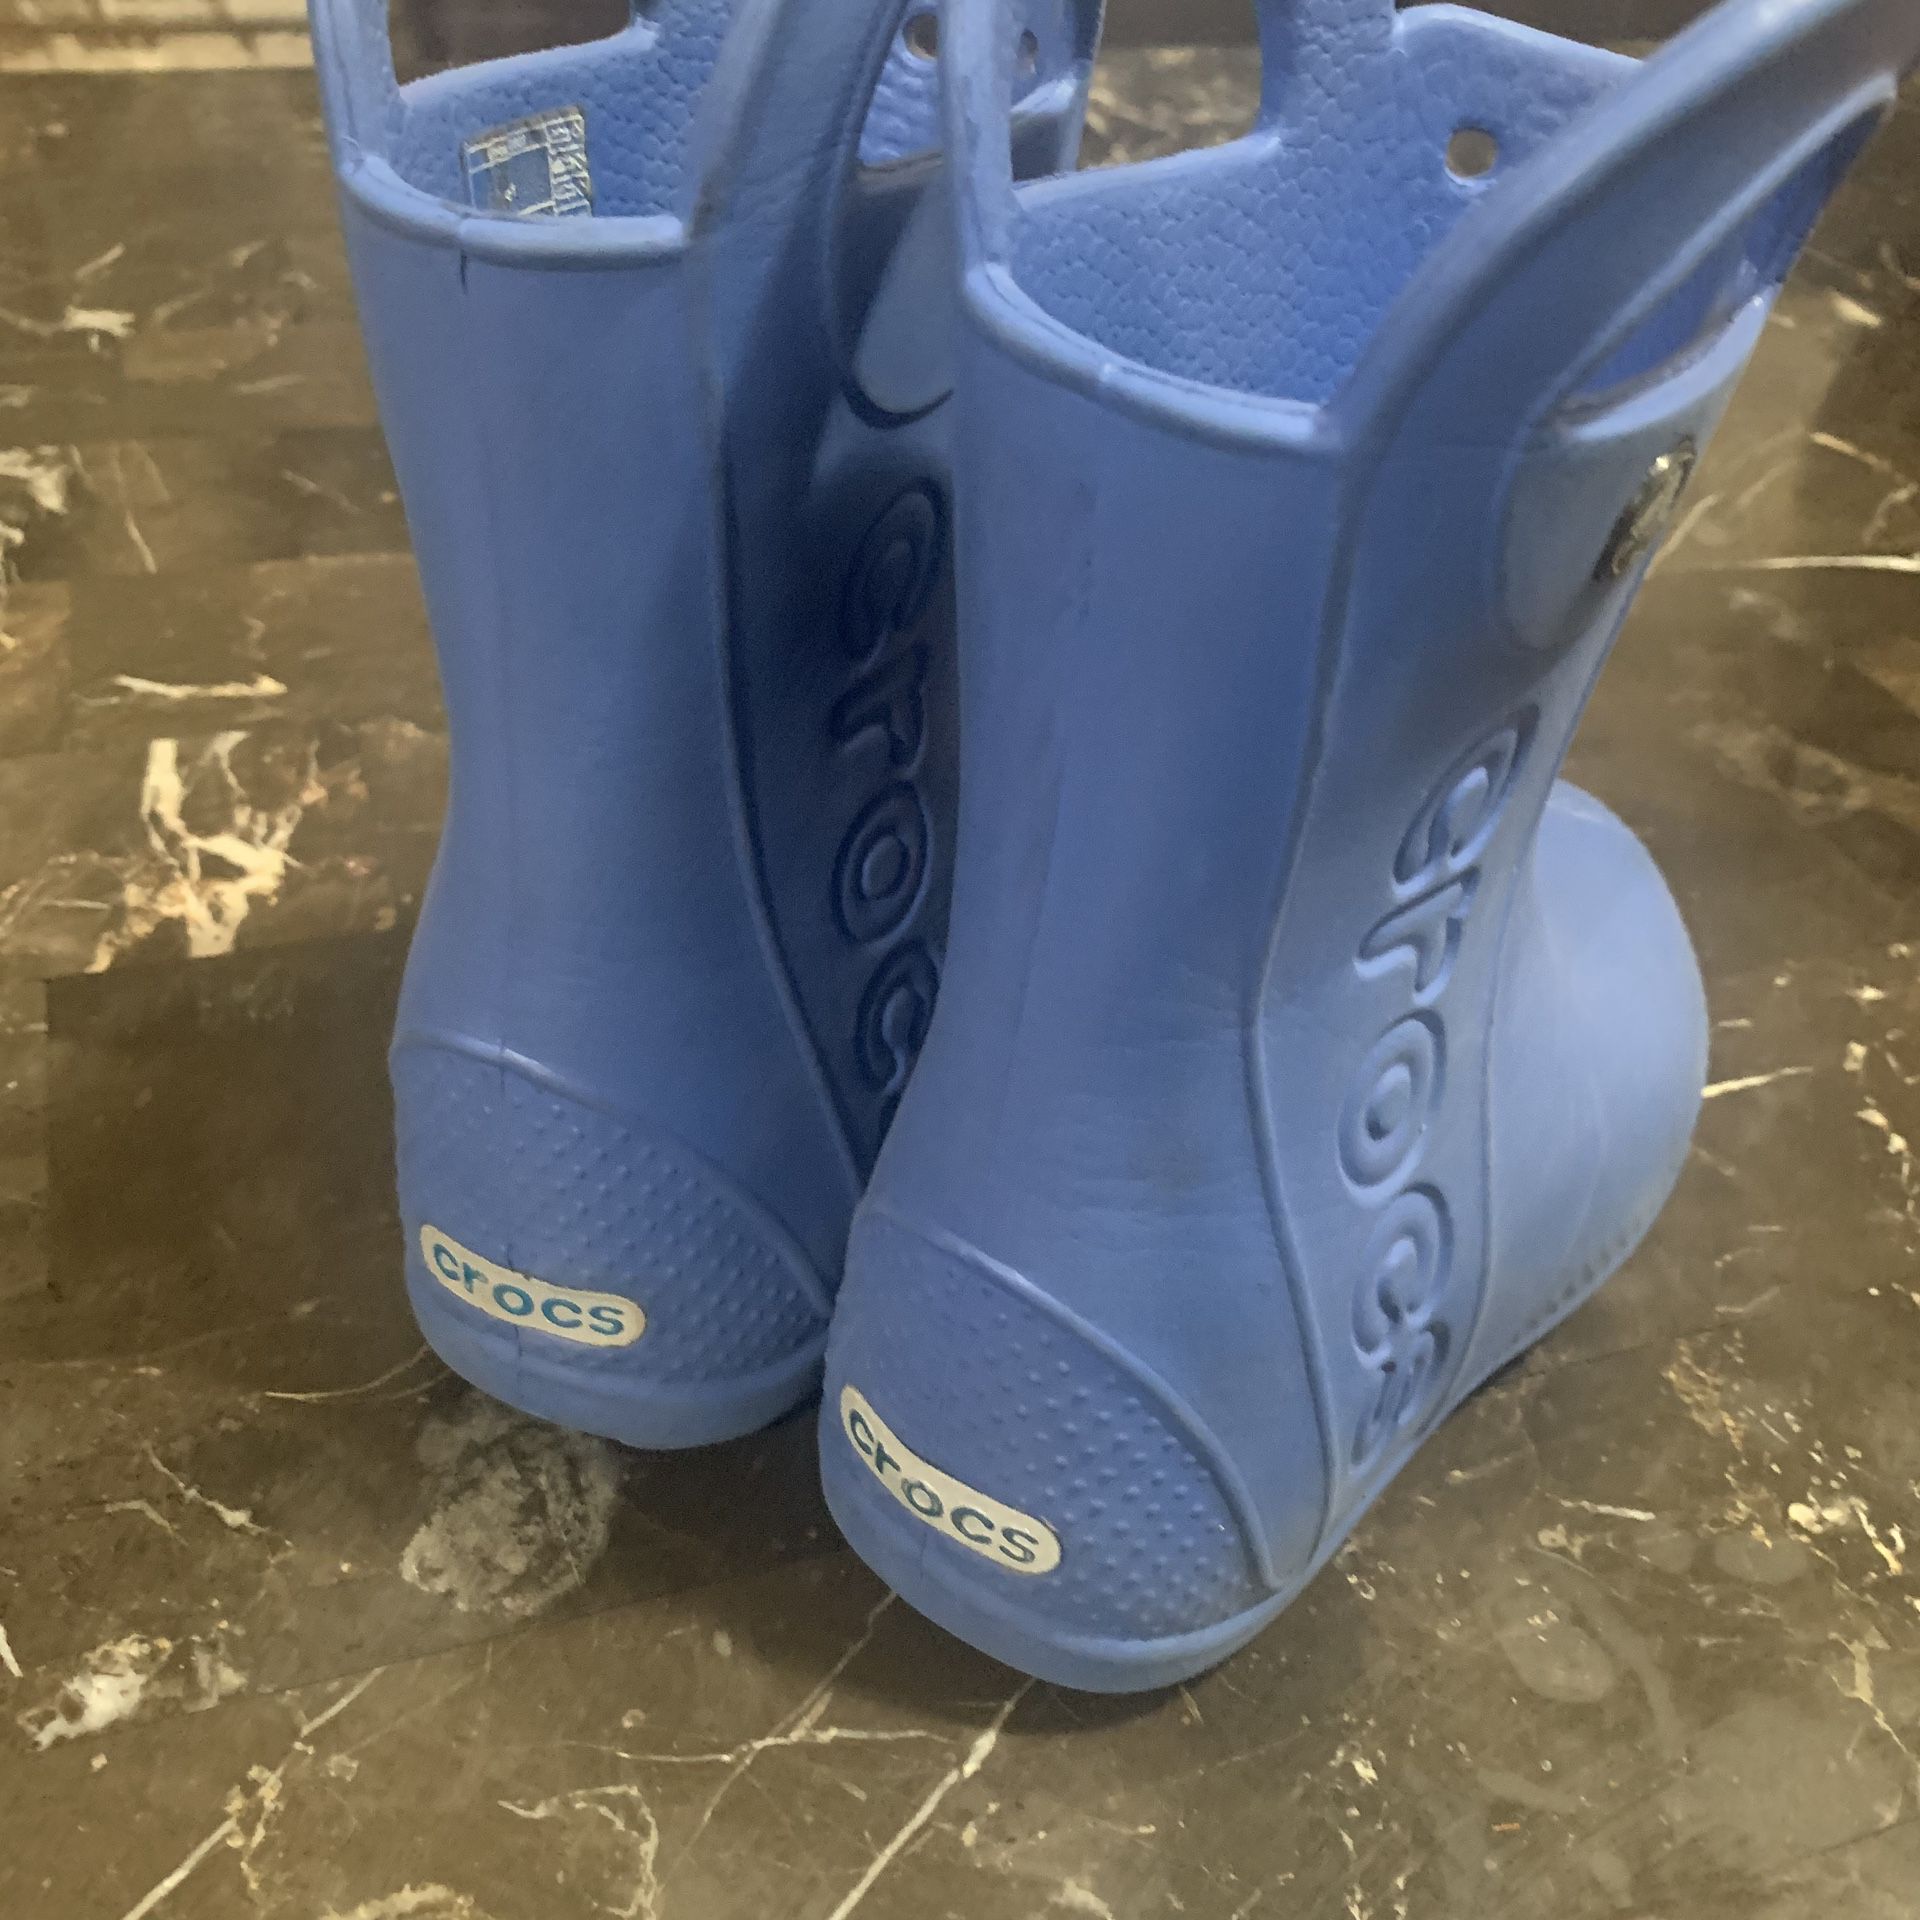 Crocs rain boots